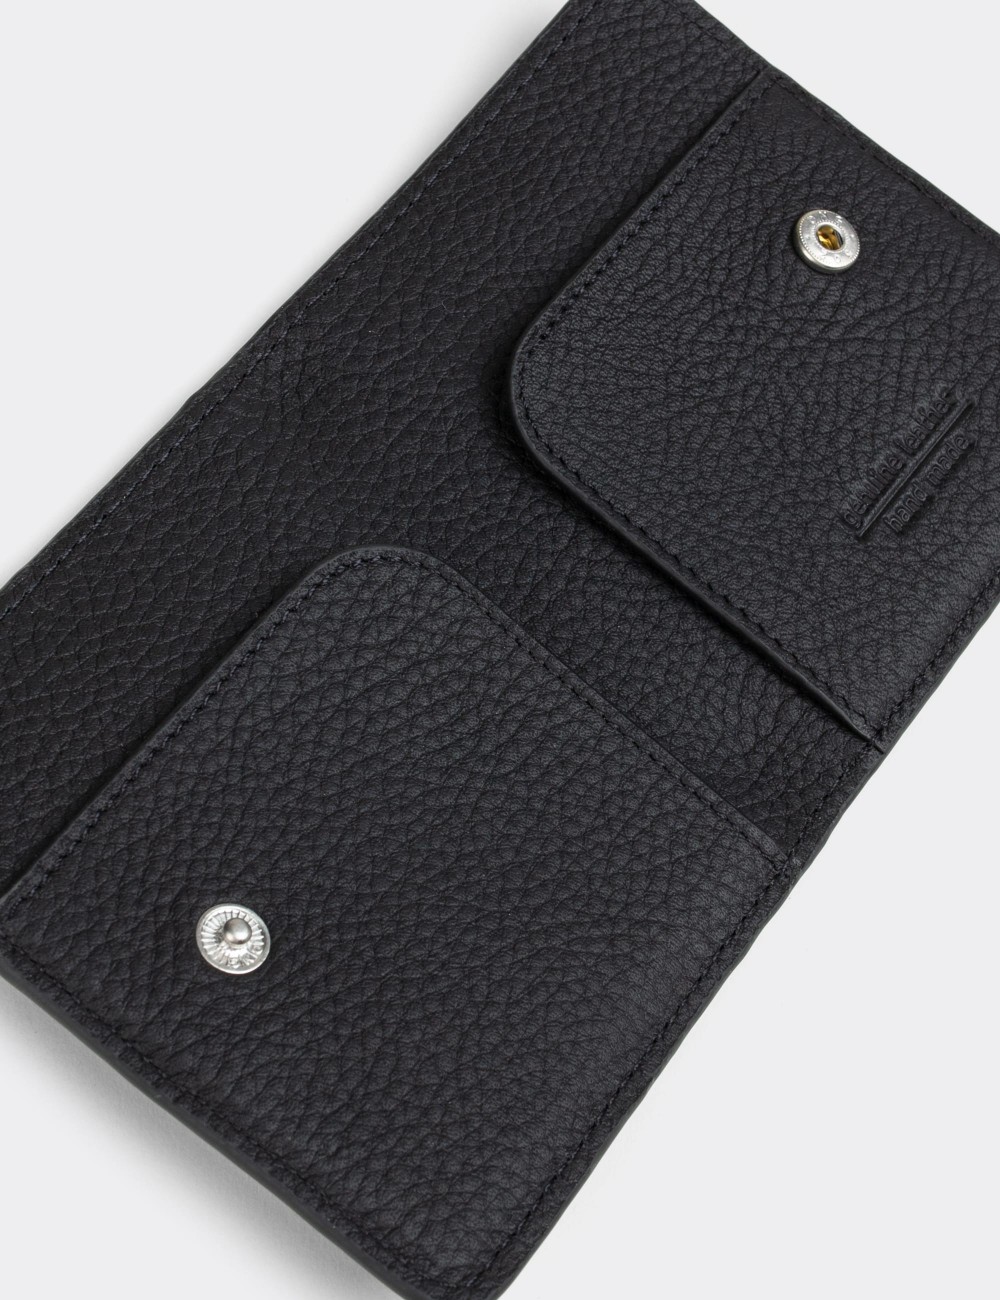  Leather Black Men's Wallet - 00512MSYHZ01